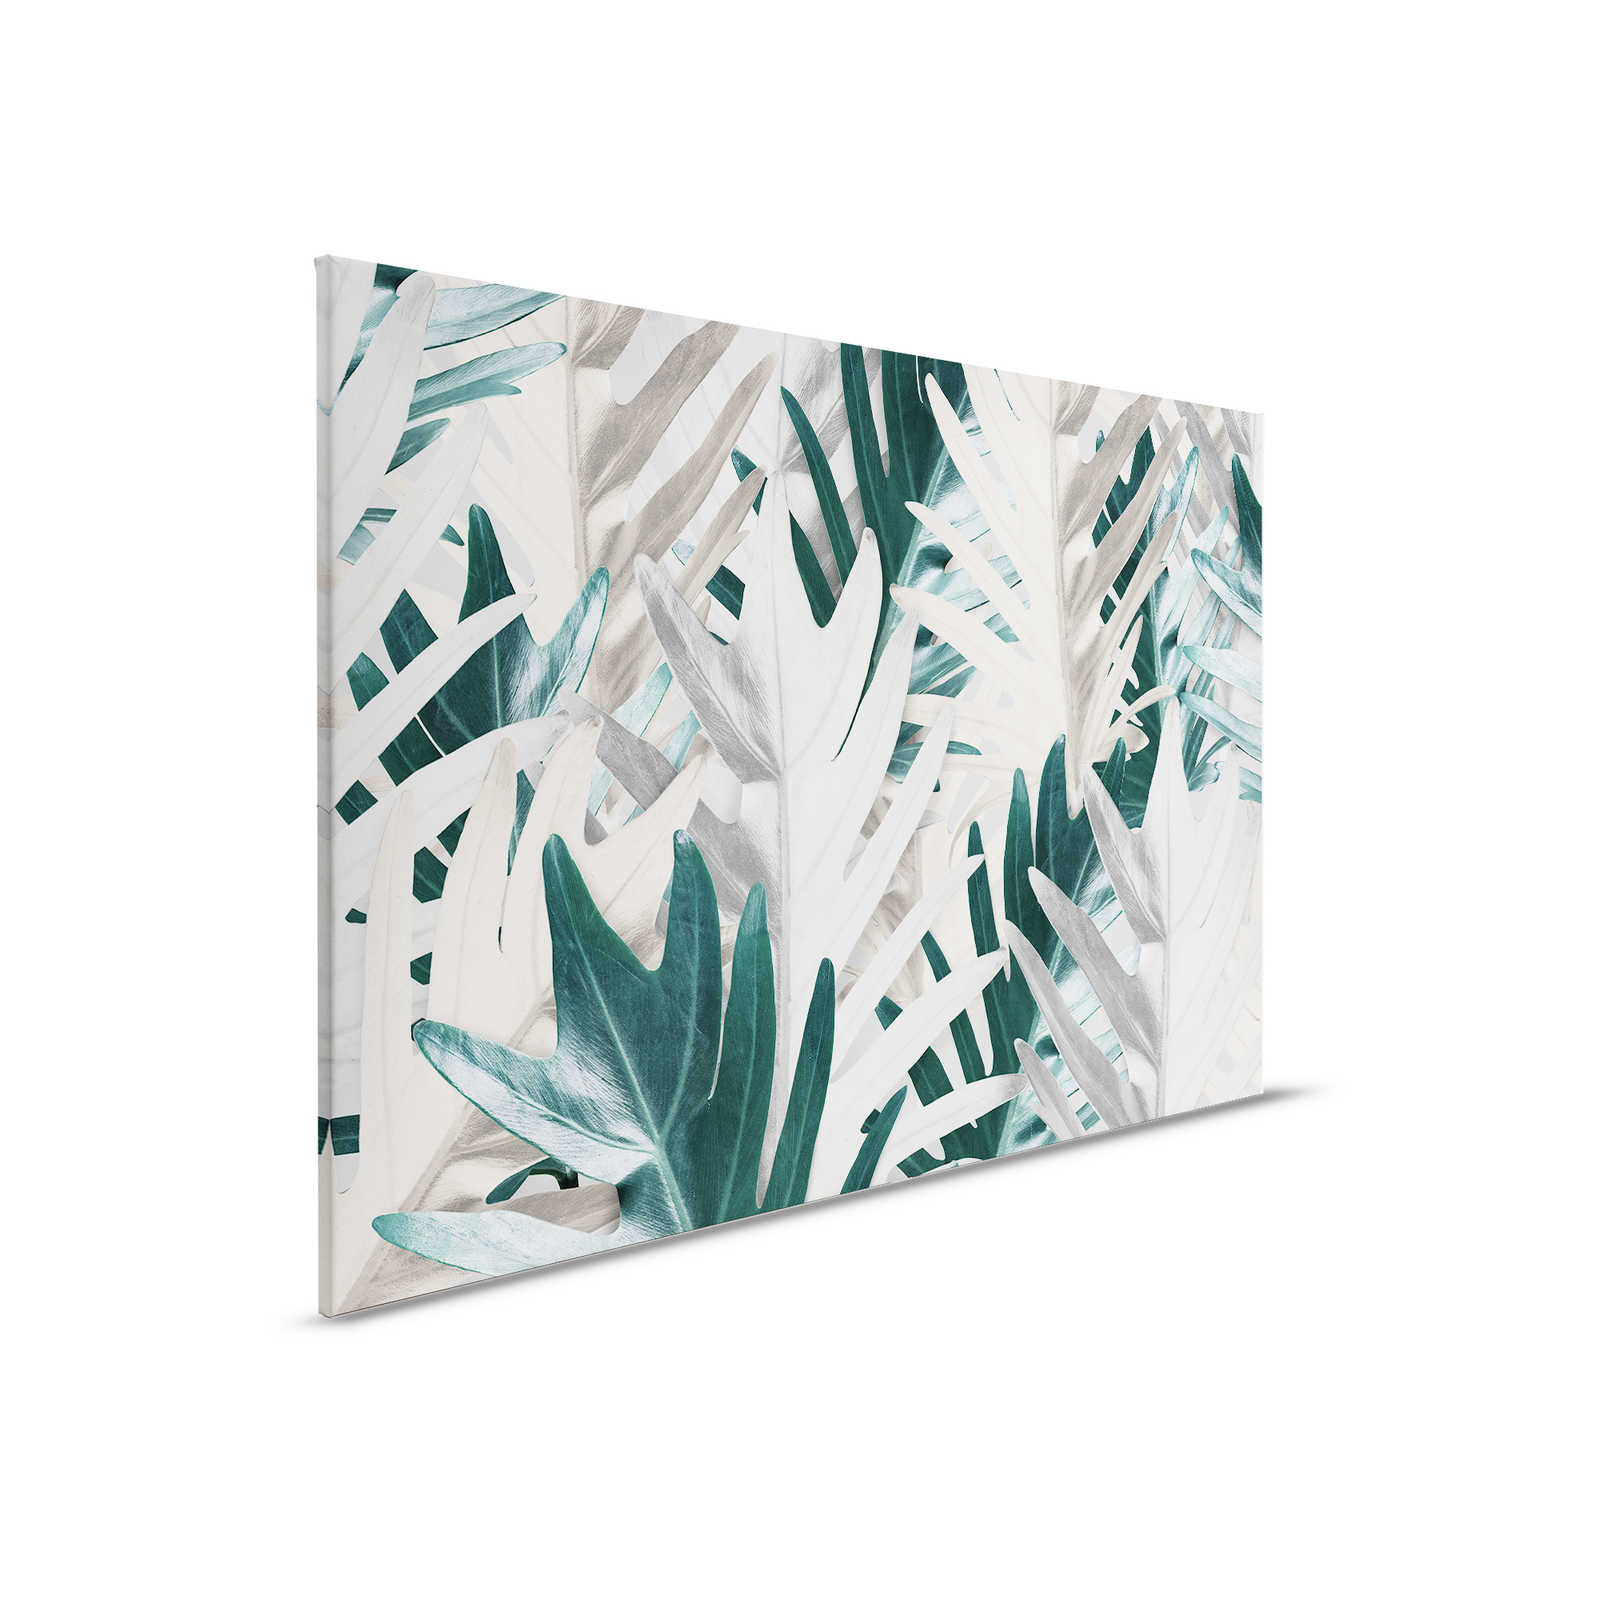 Quadro su tela con foglie di palma tropicali - 0,90 m x 0,60 m
